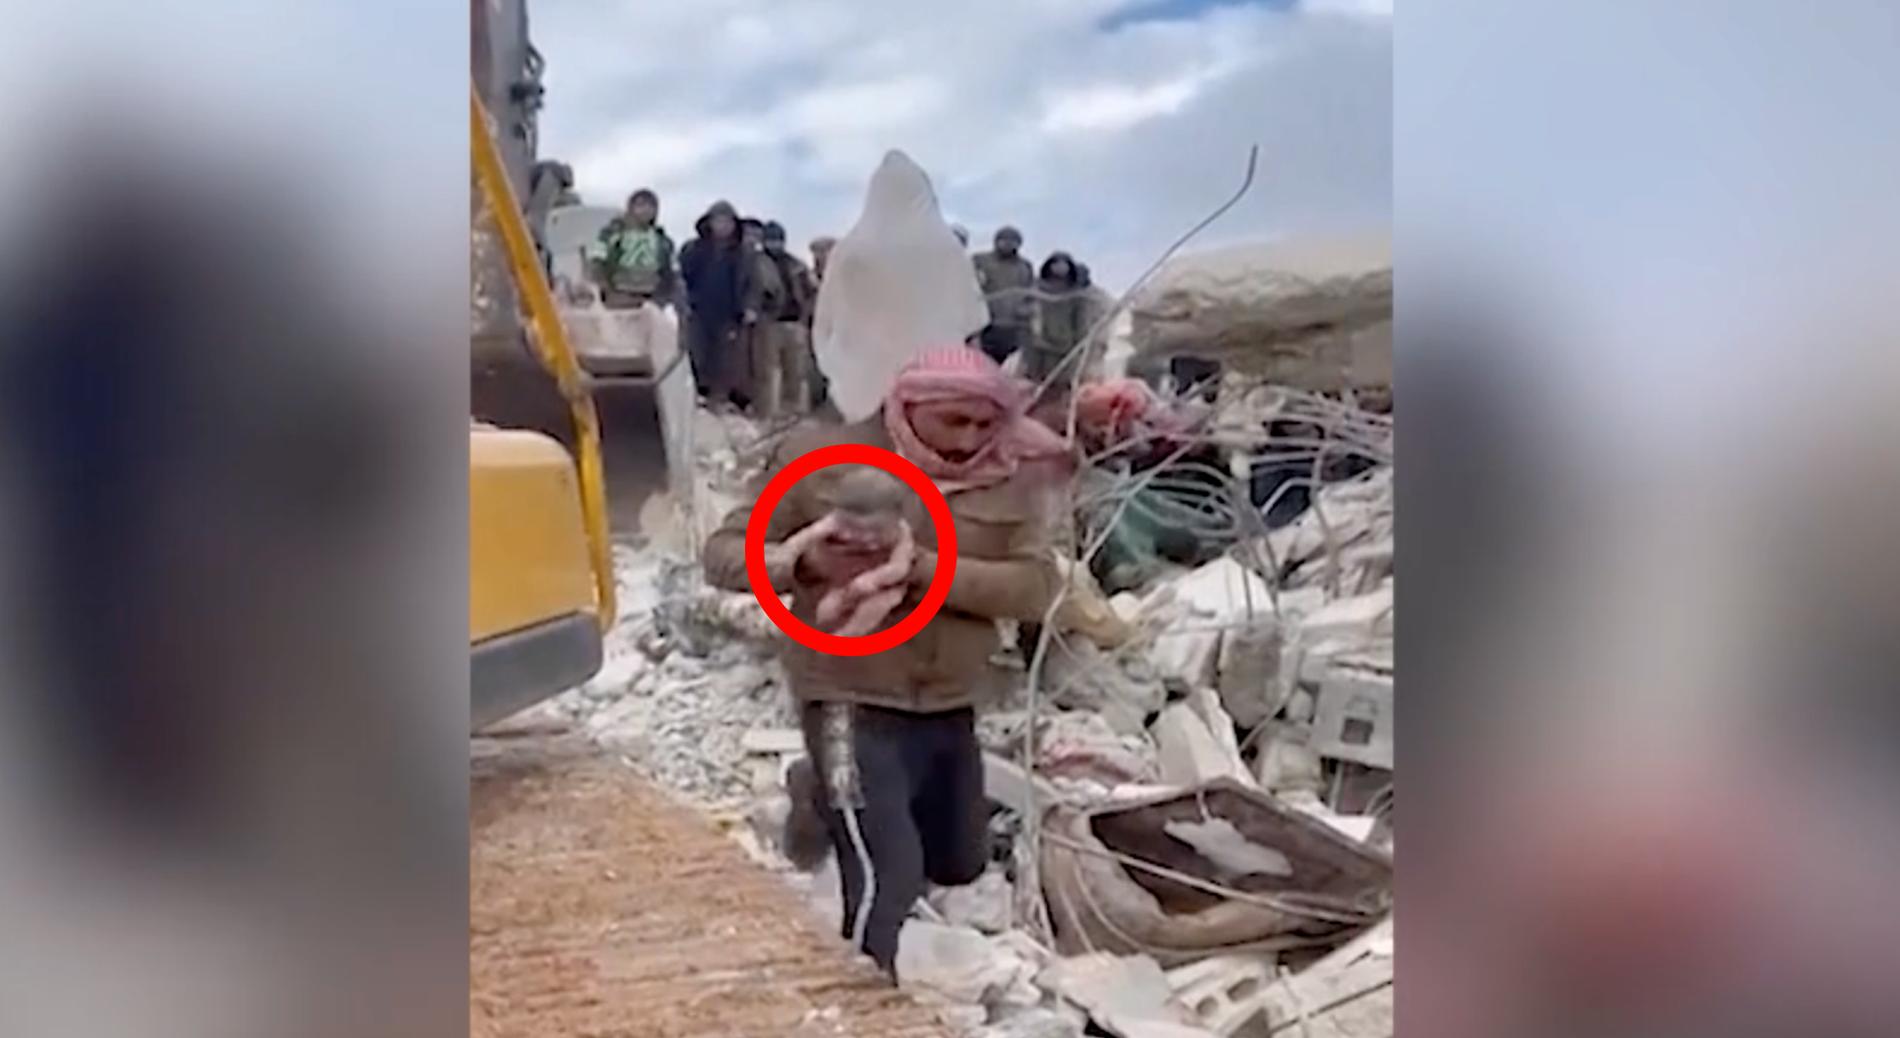 En video som fått stor spridning på internet visar hur Aya, nyförlöst, räddas ur rasmassorna efter den stora jordbävningen som drabbat Syrien och Turkiet.